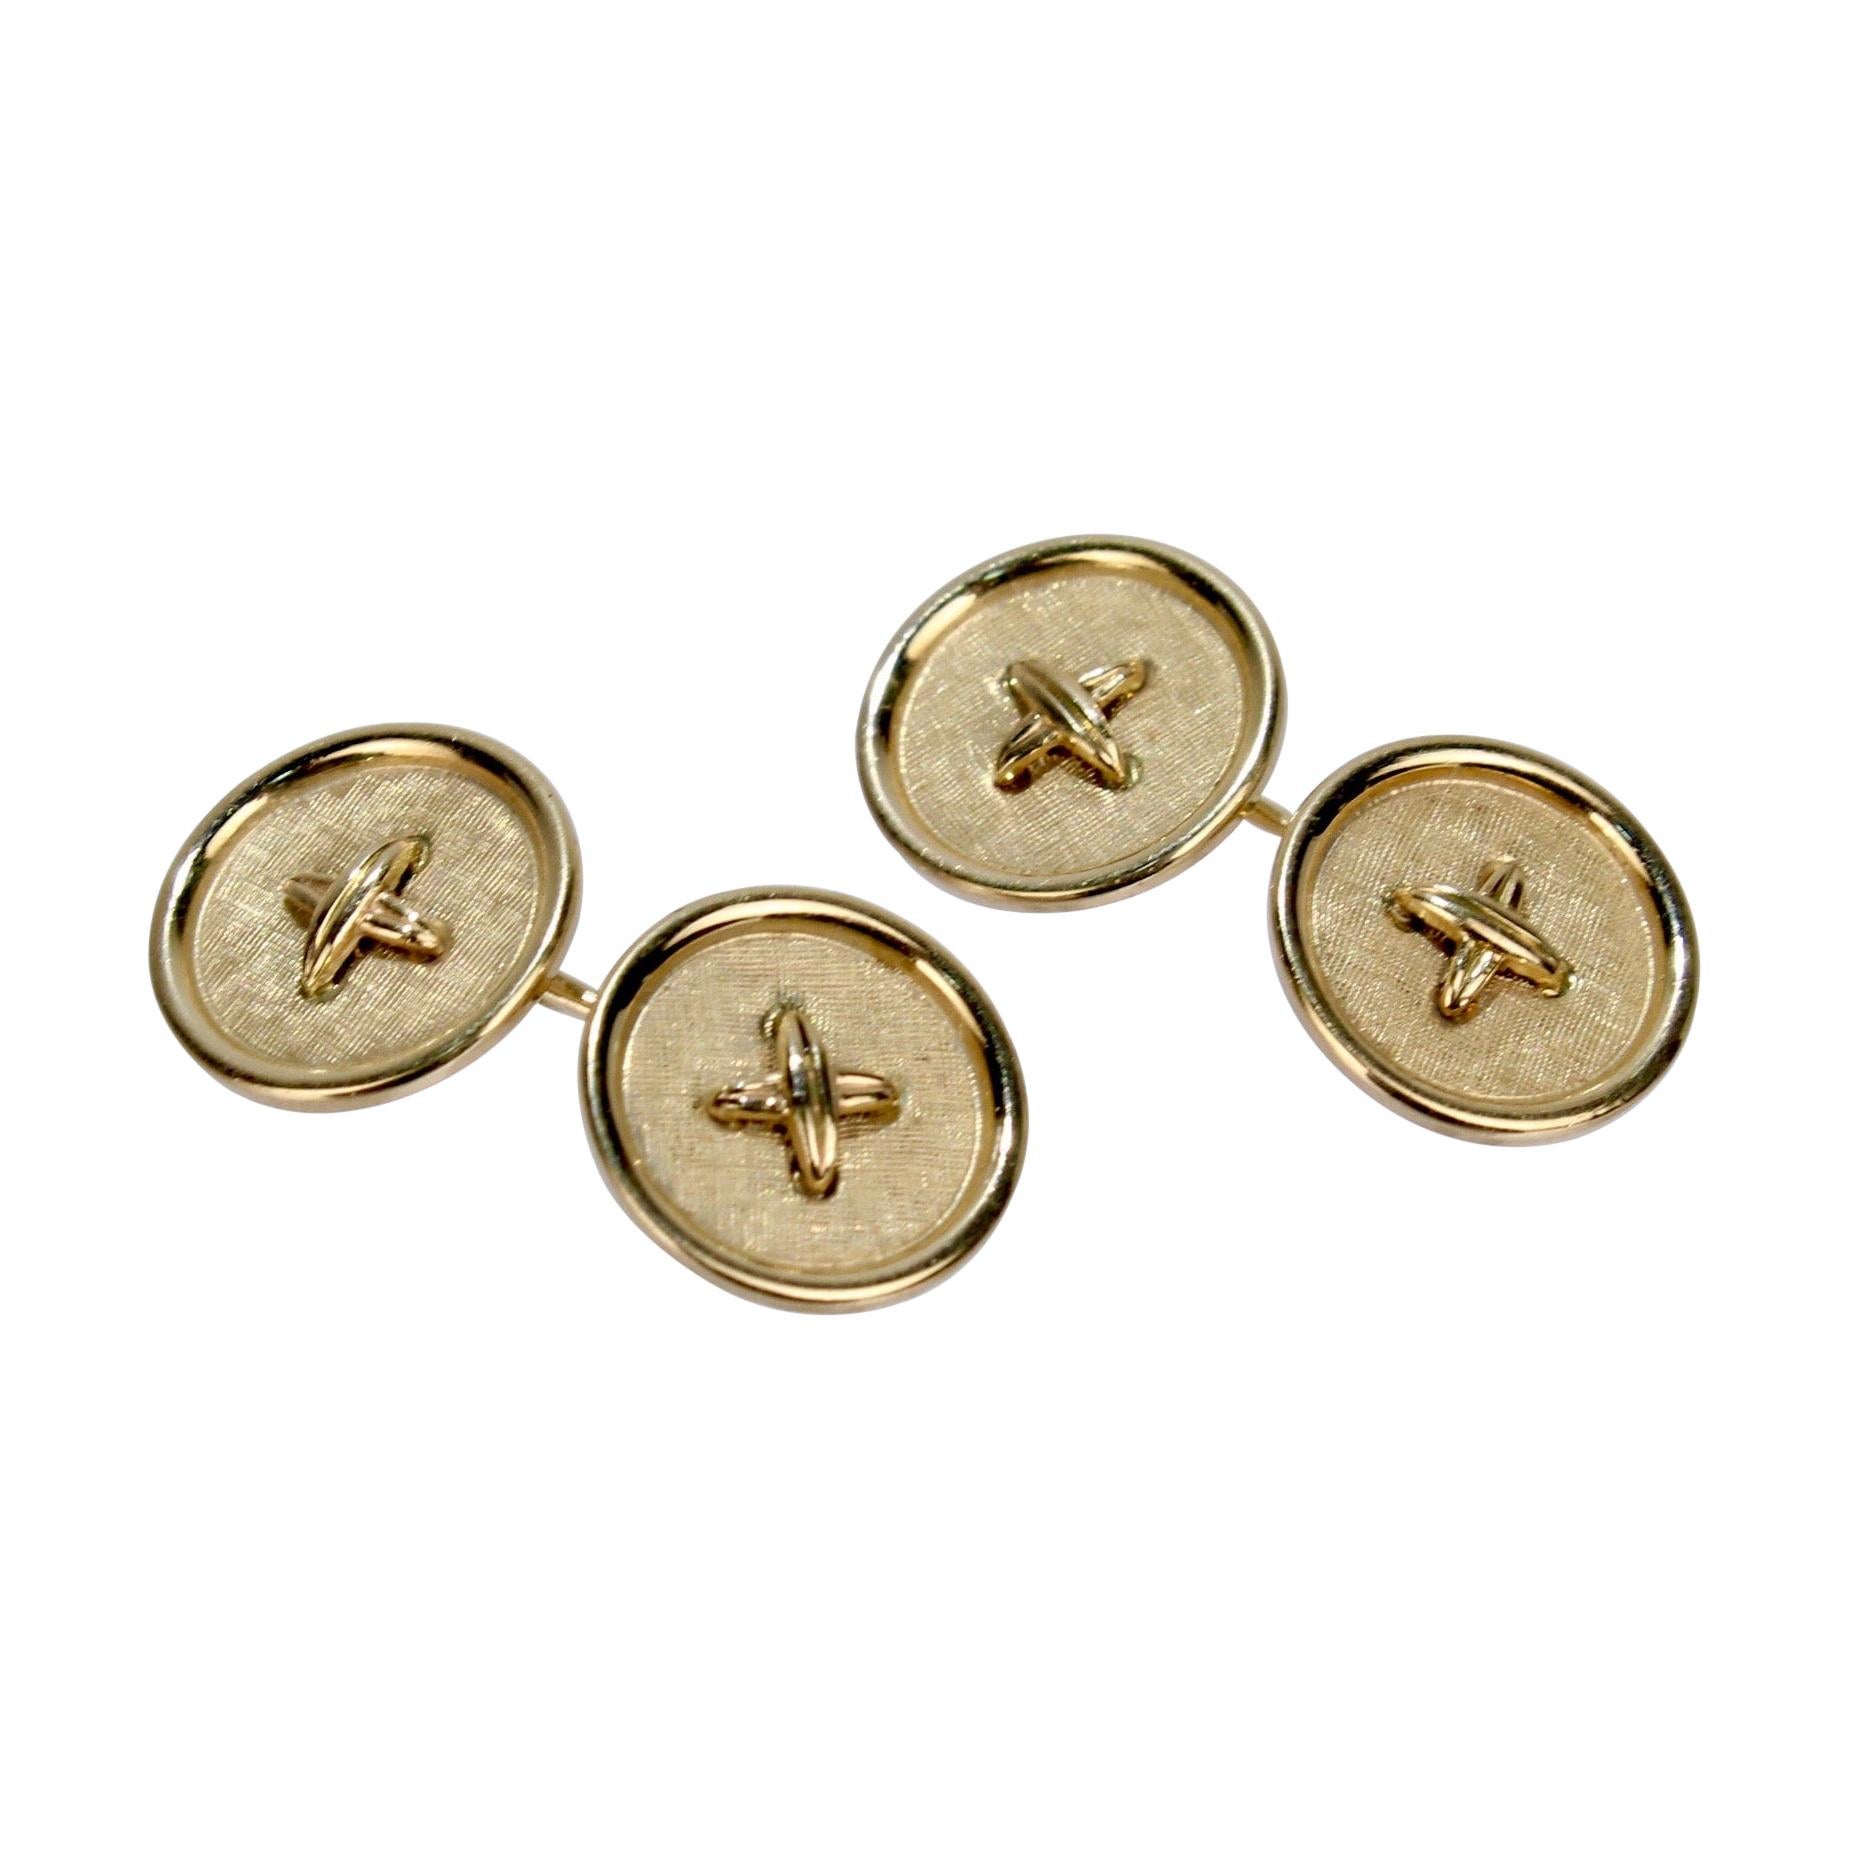 Vintage 14 Karat Gold Button Form Cufflinks